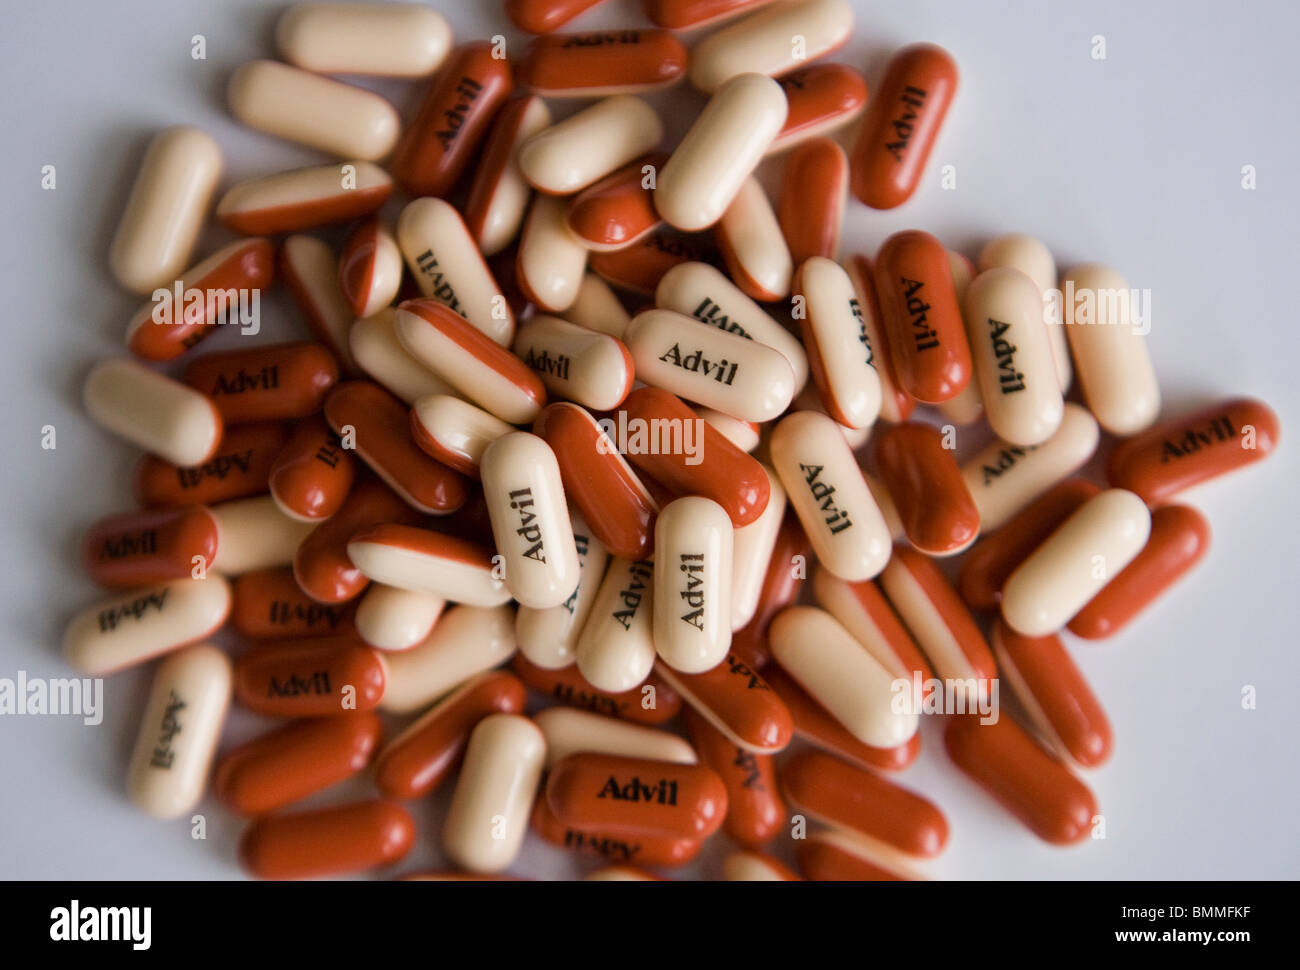 Imballaggio a base di ibuprofene e pillole. Foto Stock